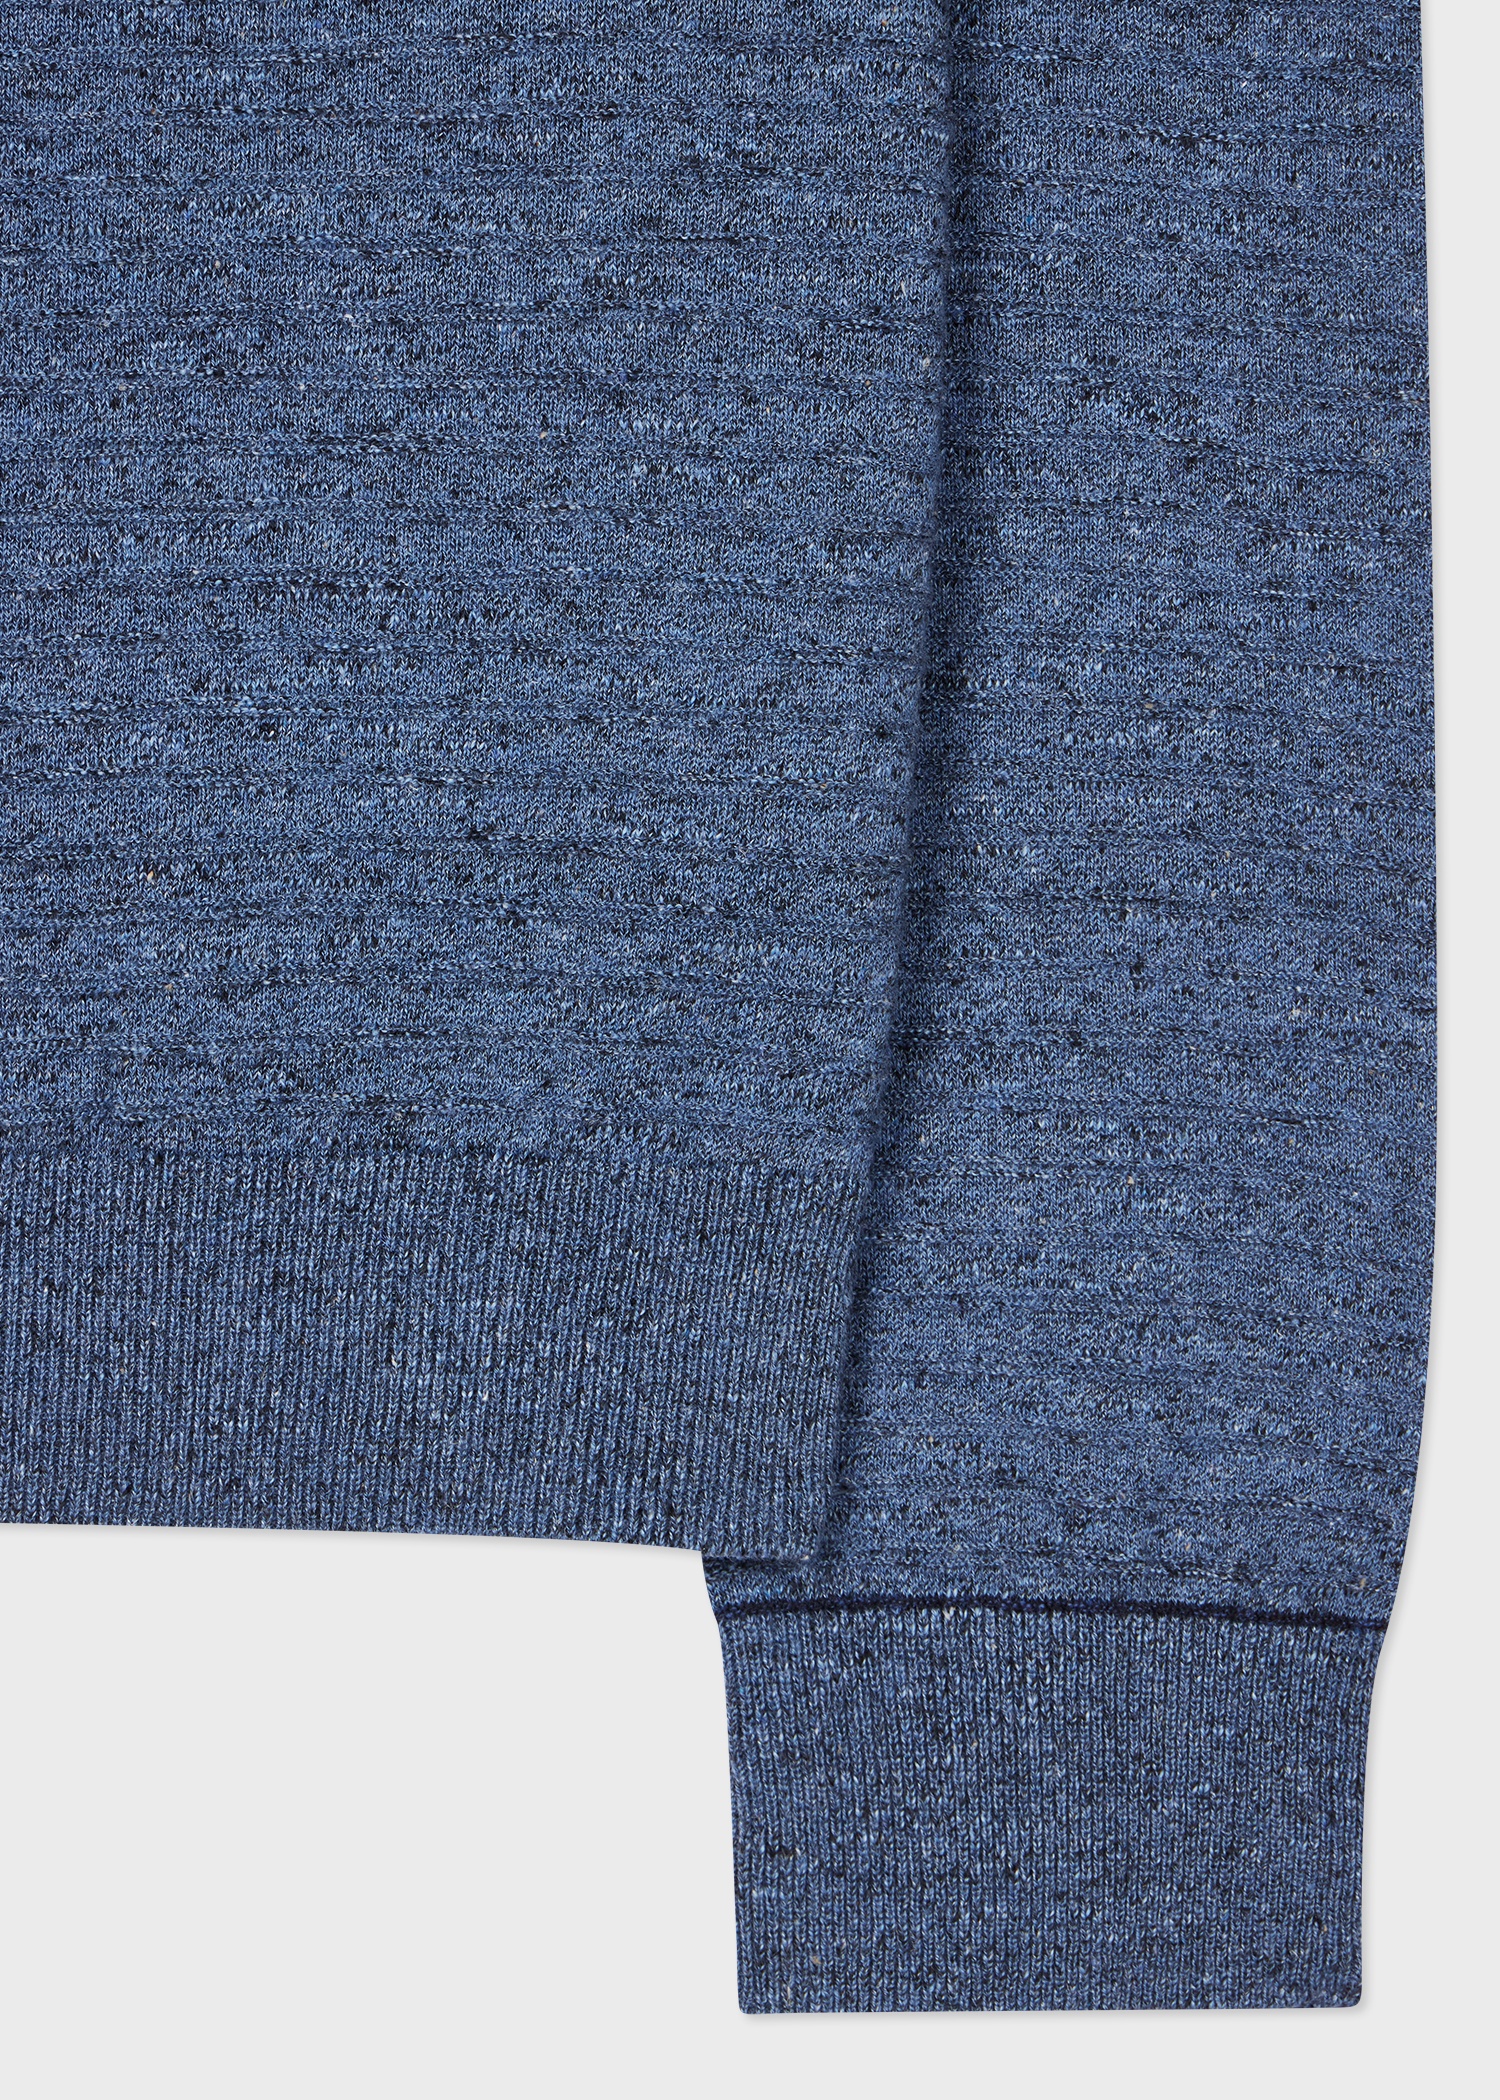 Light Blue Cotton-Linen Textured Sweater - 2